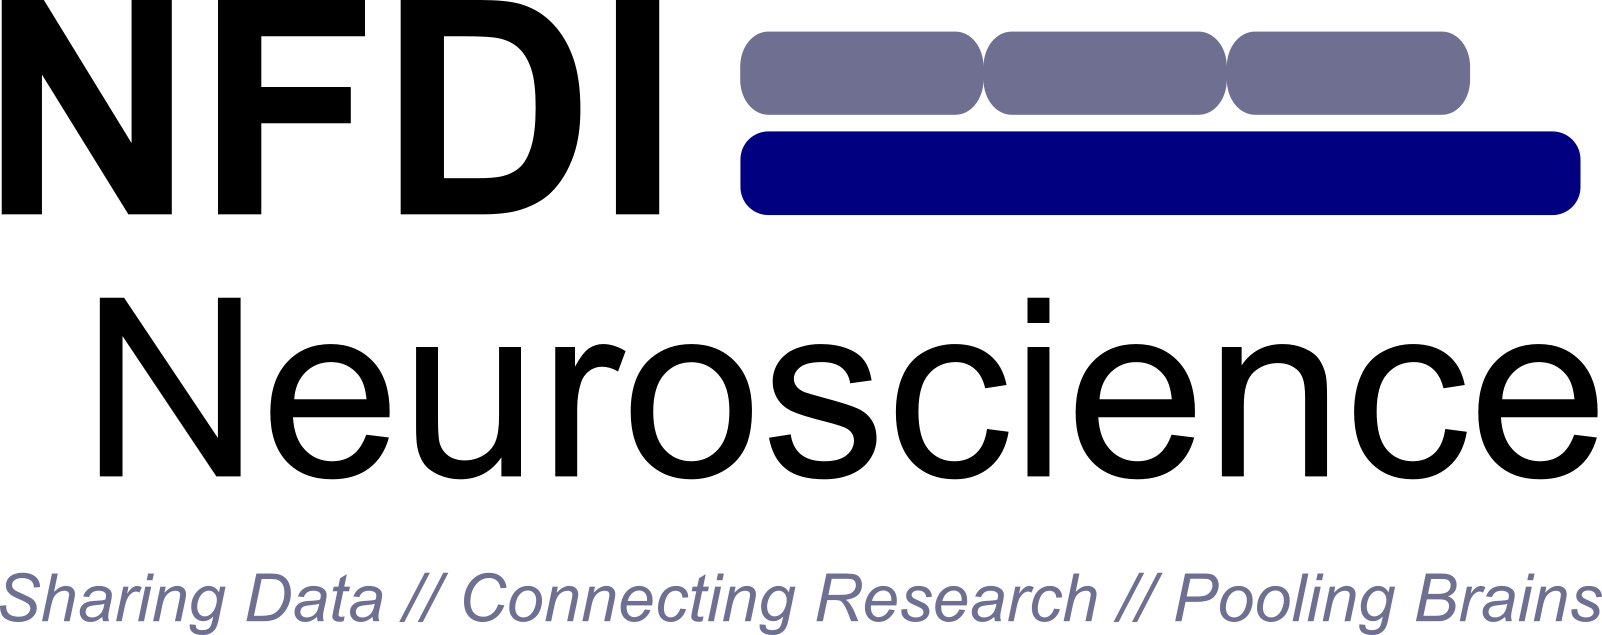 NFDI_Neuroscience_logo_mission_small